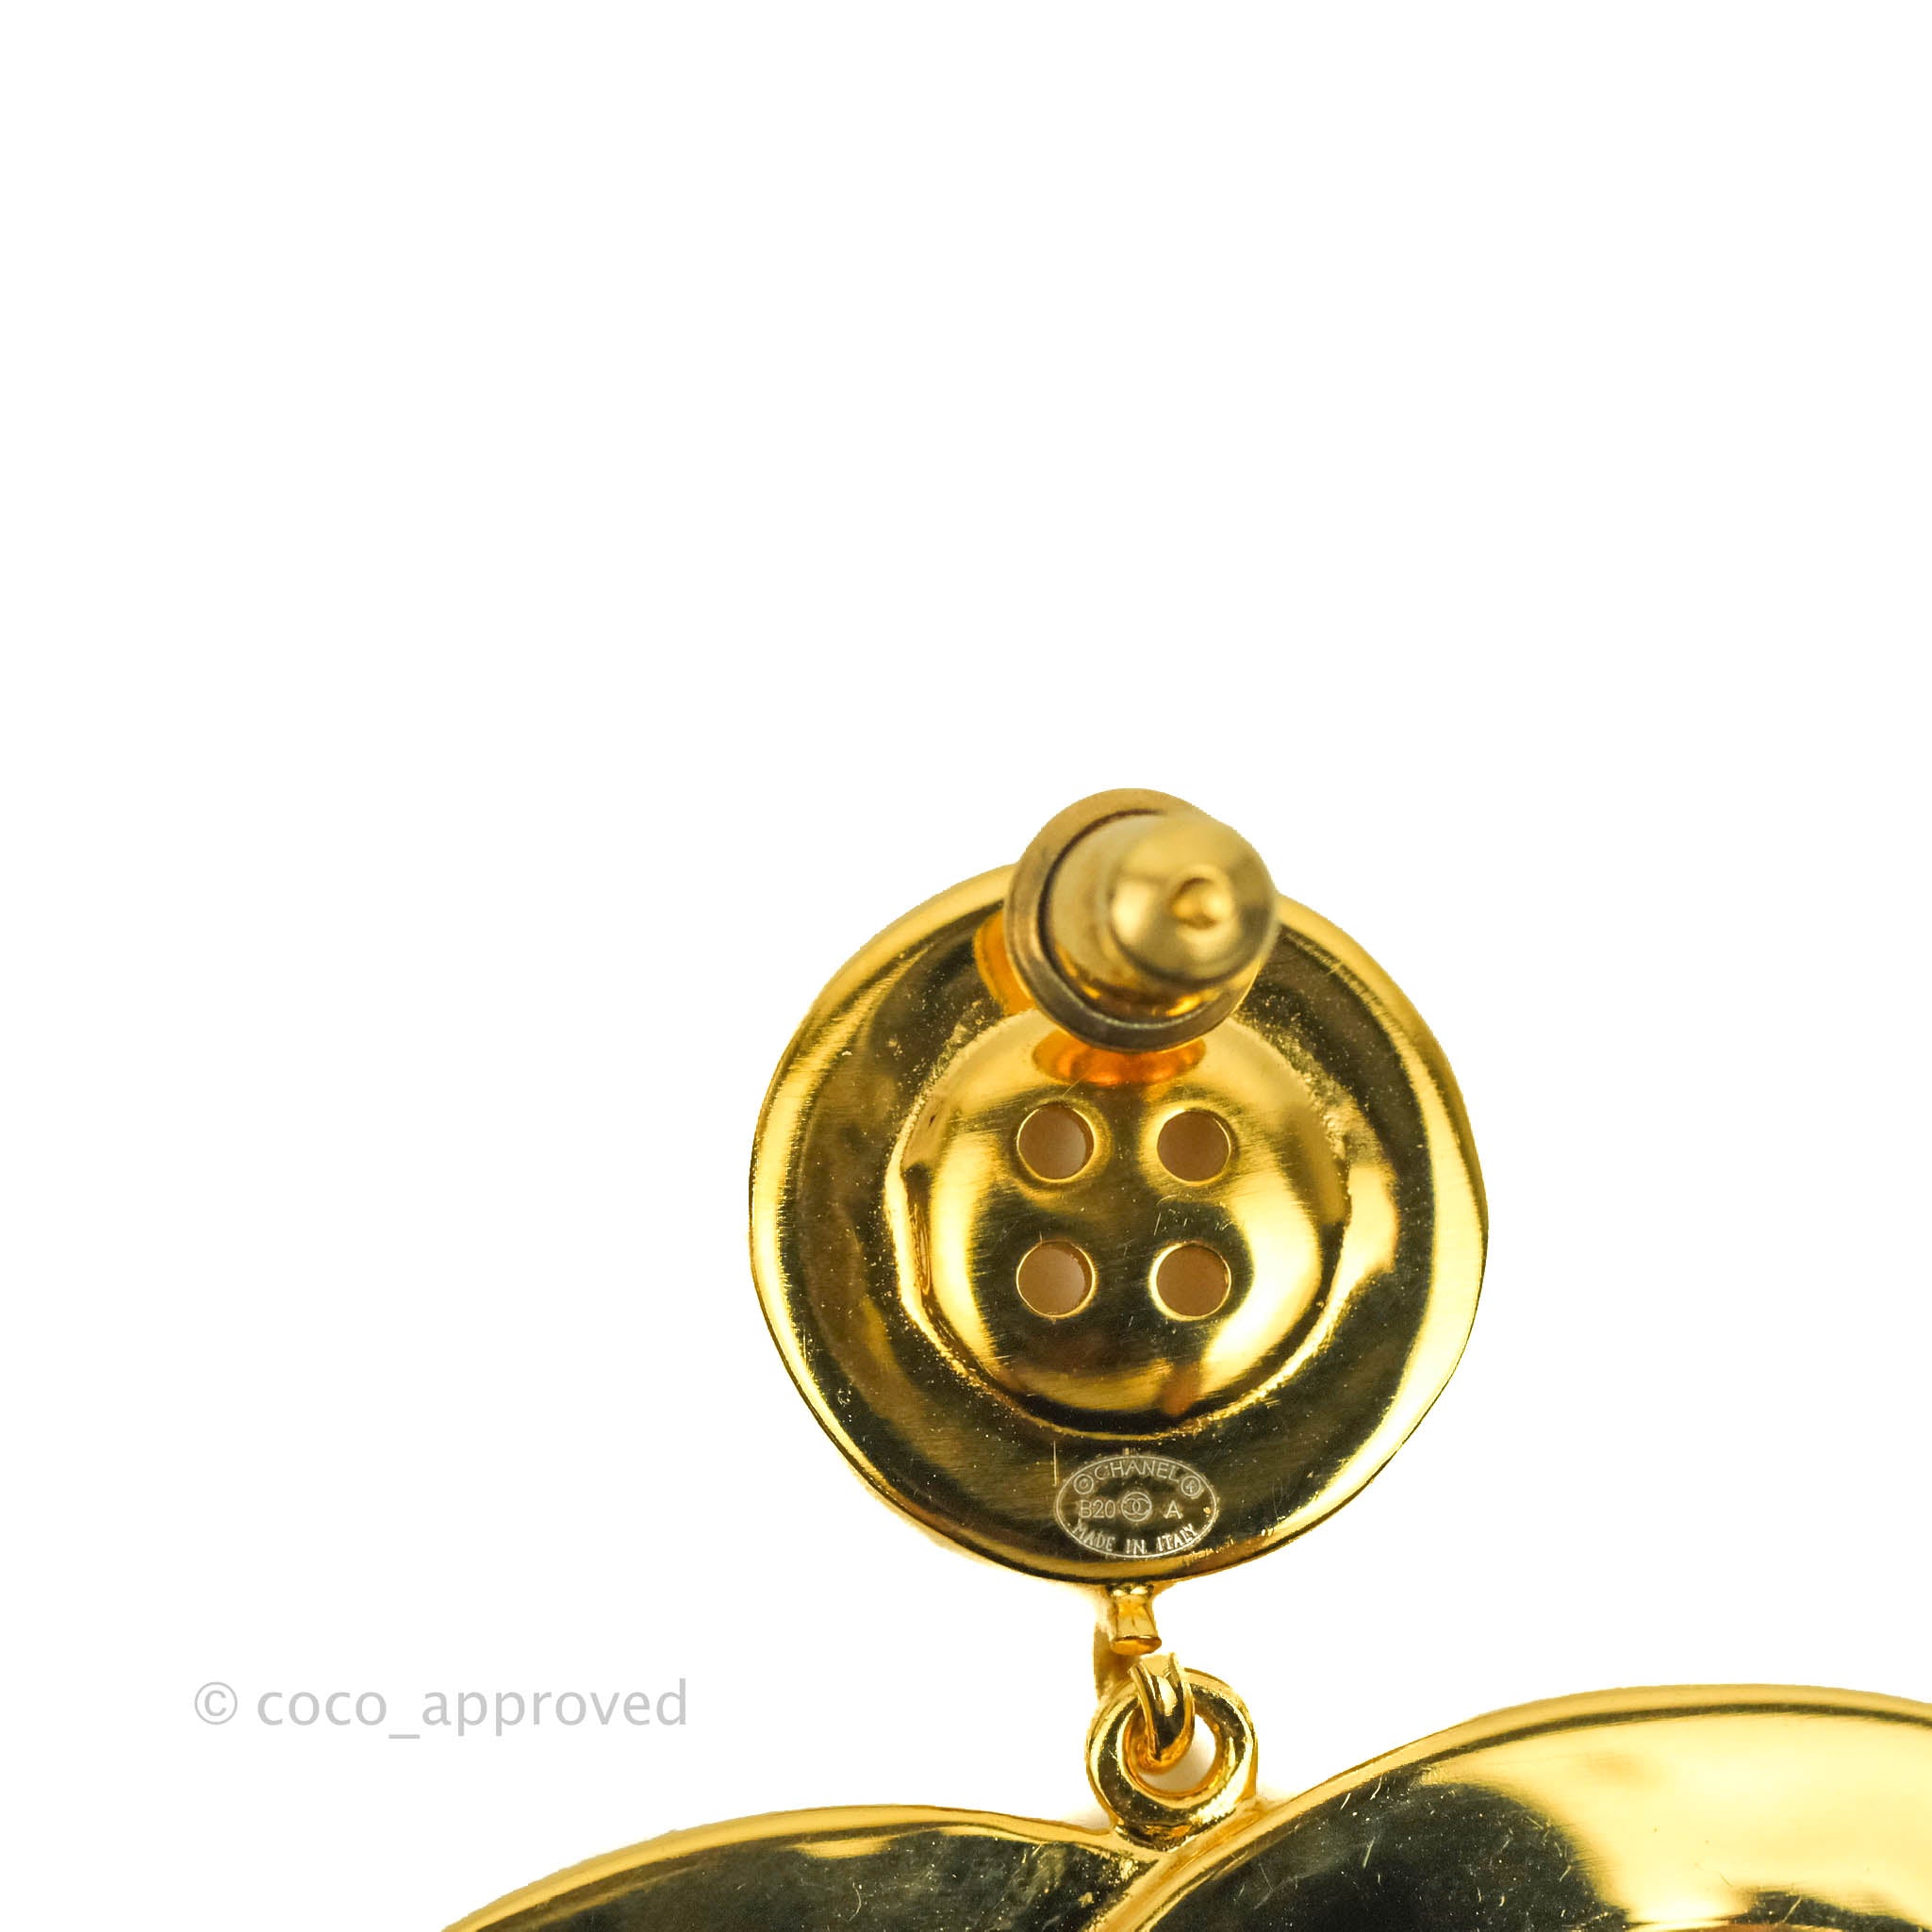 chanel black gold earrings